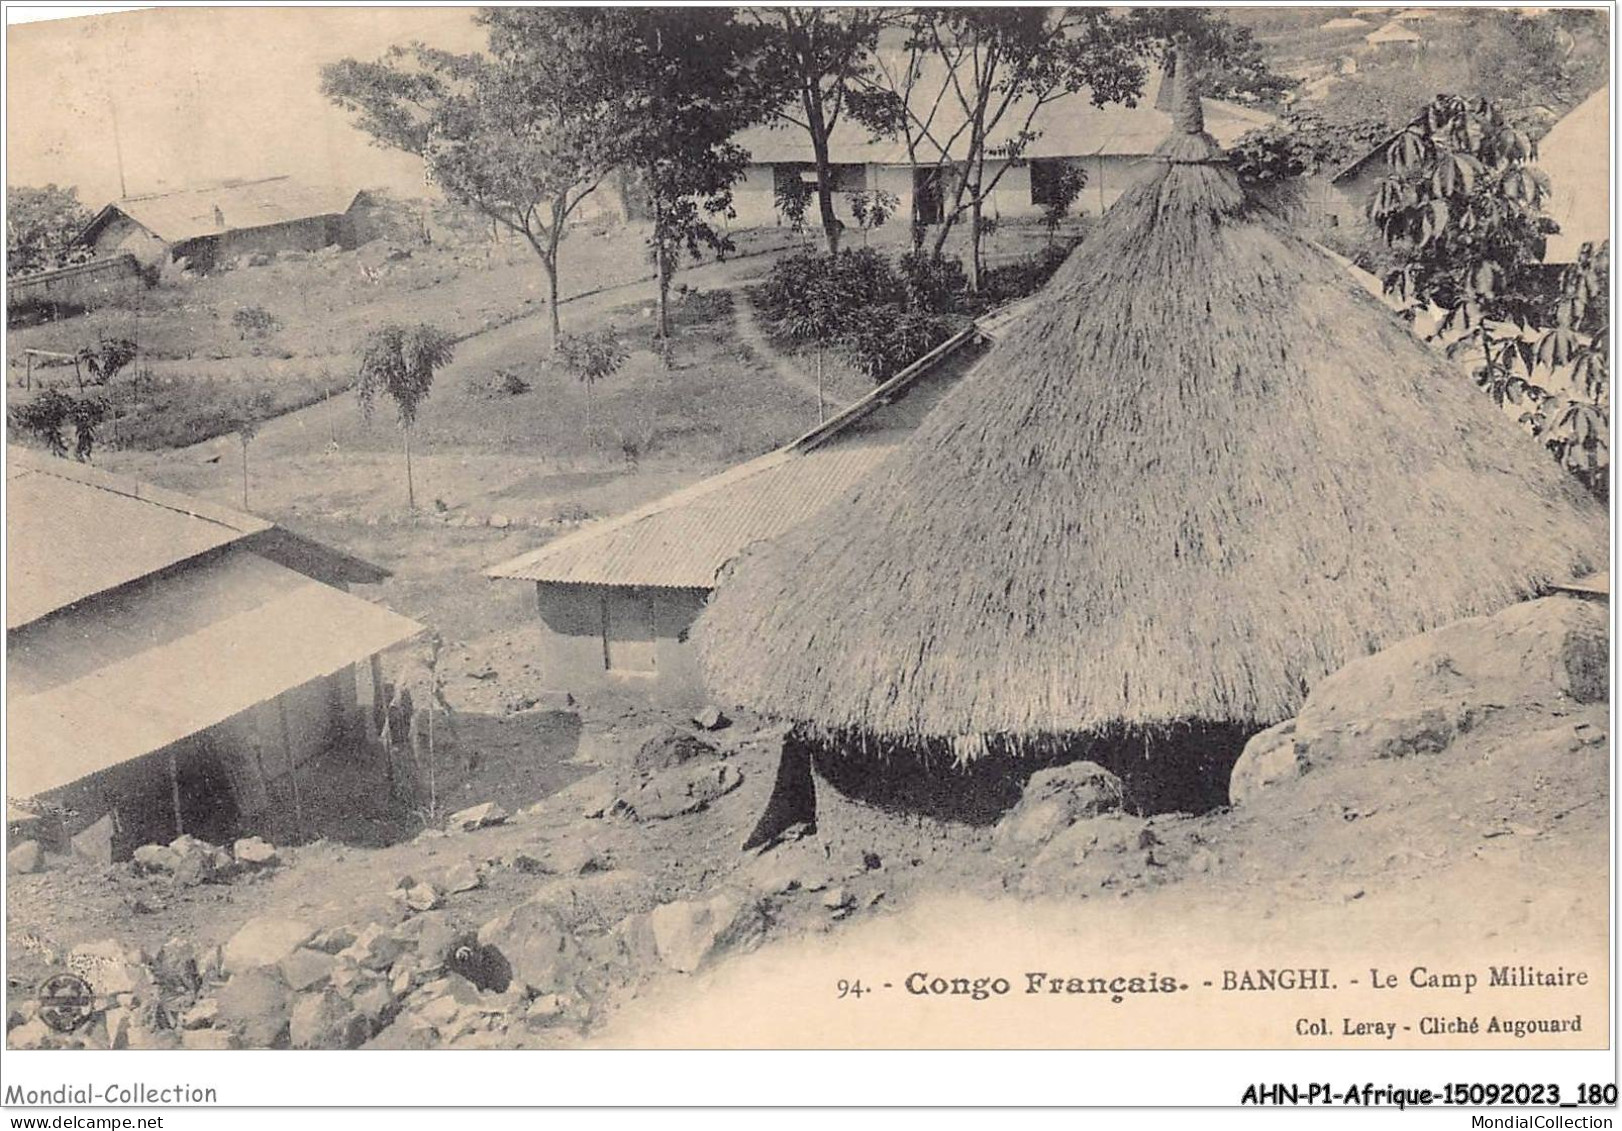 AHNP1-0090 - AFRIQUE - CONGO FRANCAIS - BANGHI - Le Camp Militaire  - French Congo